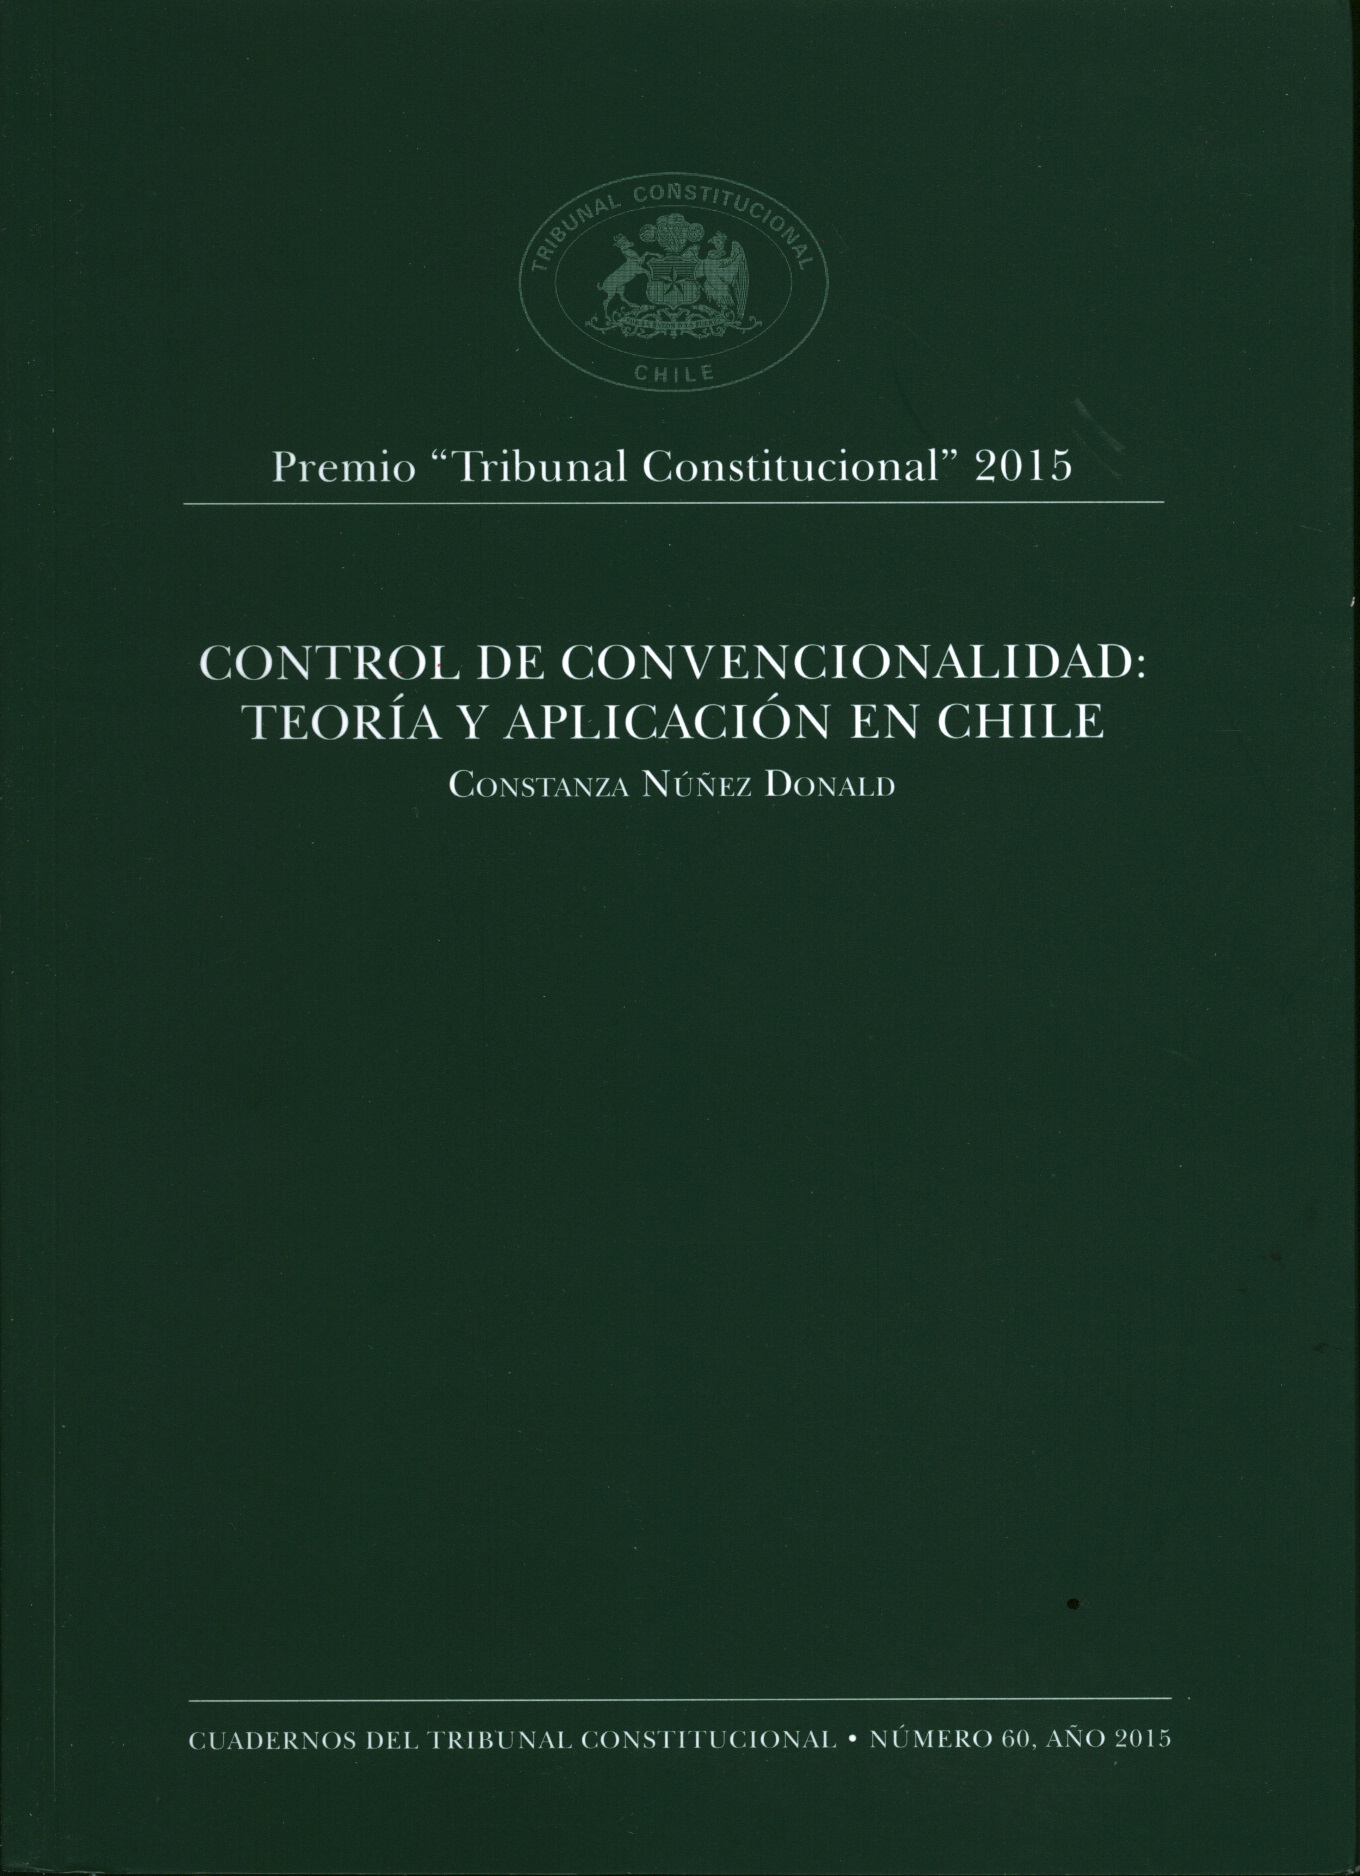 Control de convencionalidad: teoría y aplicación en Chile